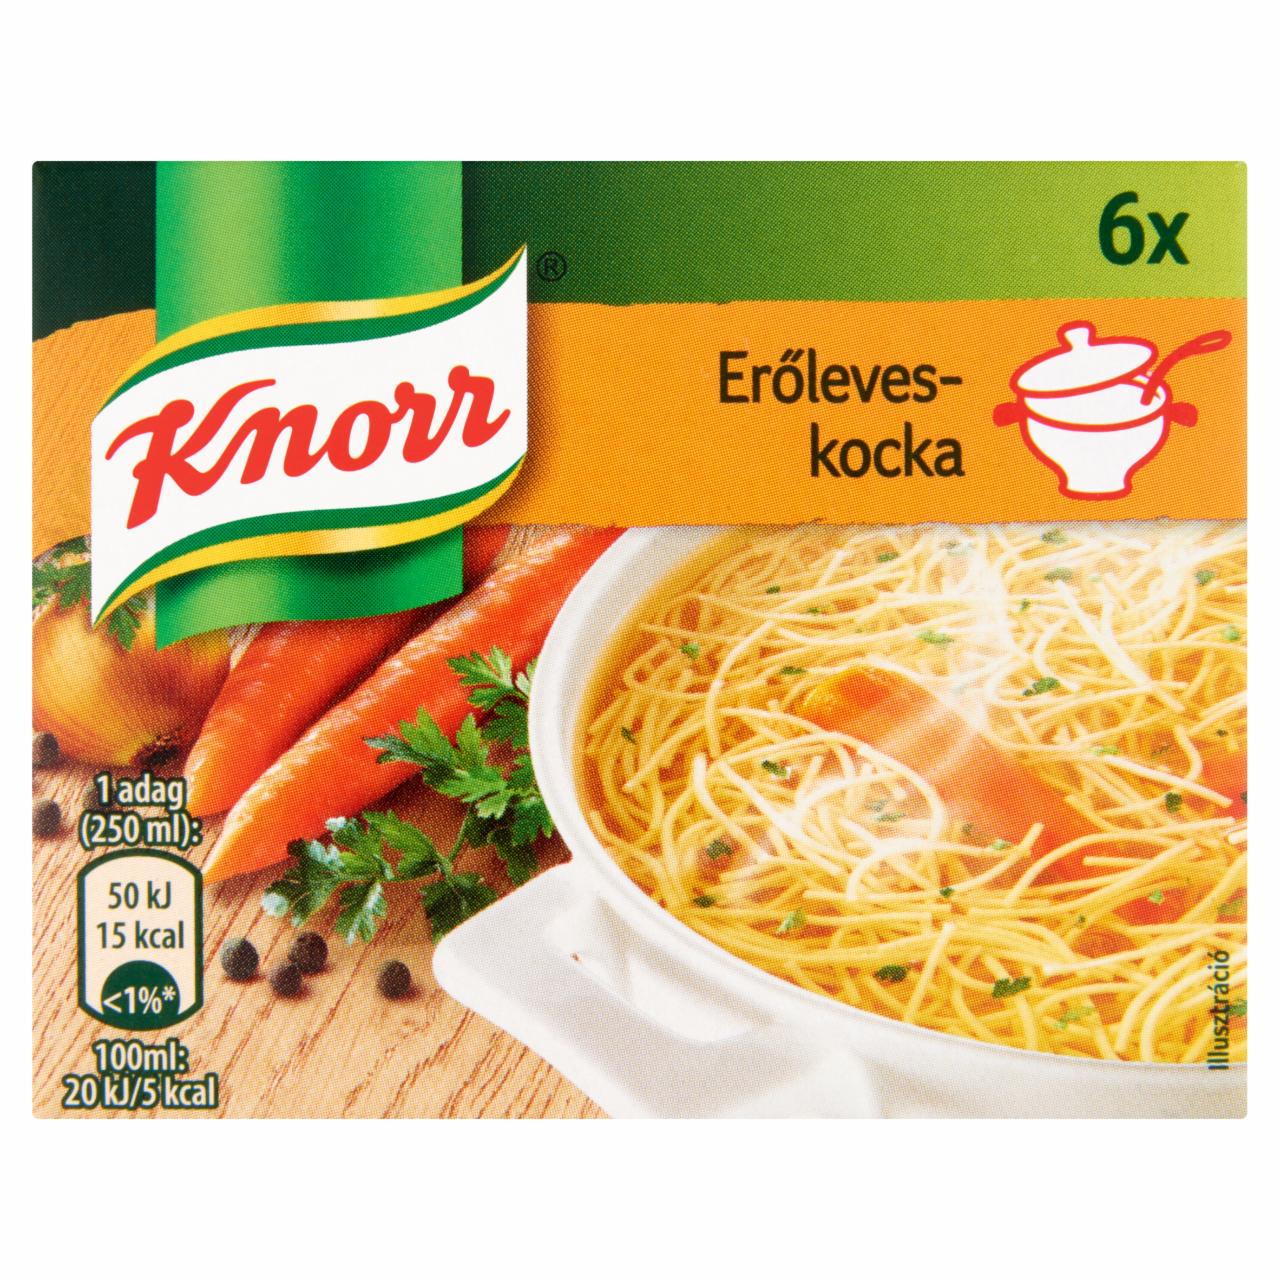 Képek - Knorr erőleveskocka 6 db 60 g